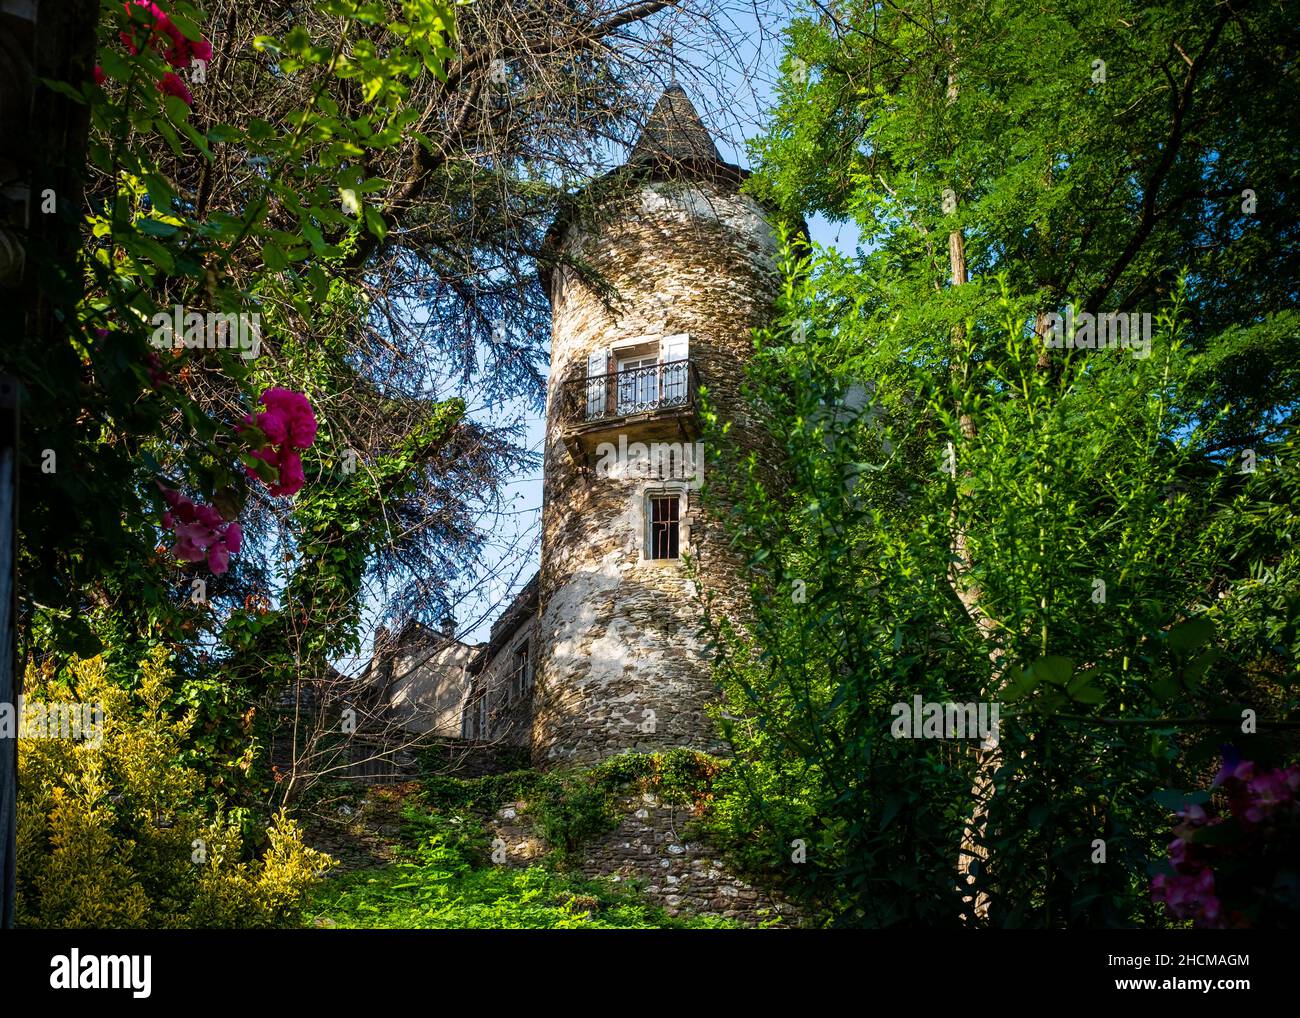 Torre de un castillo parcialmente destartalado visto a través del follaje en una pequeña ciudad del sur de Francia situada en las Cevennes, tomado en una mañana de verano soleado ingenio Foto de stock